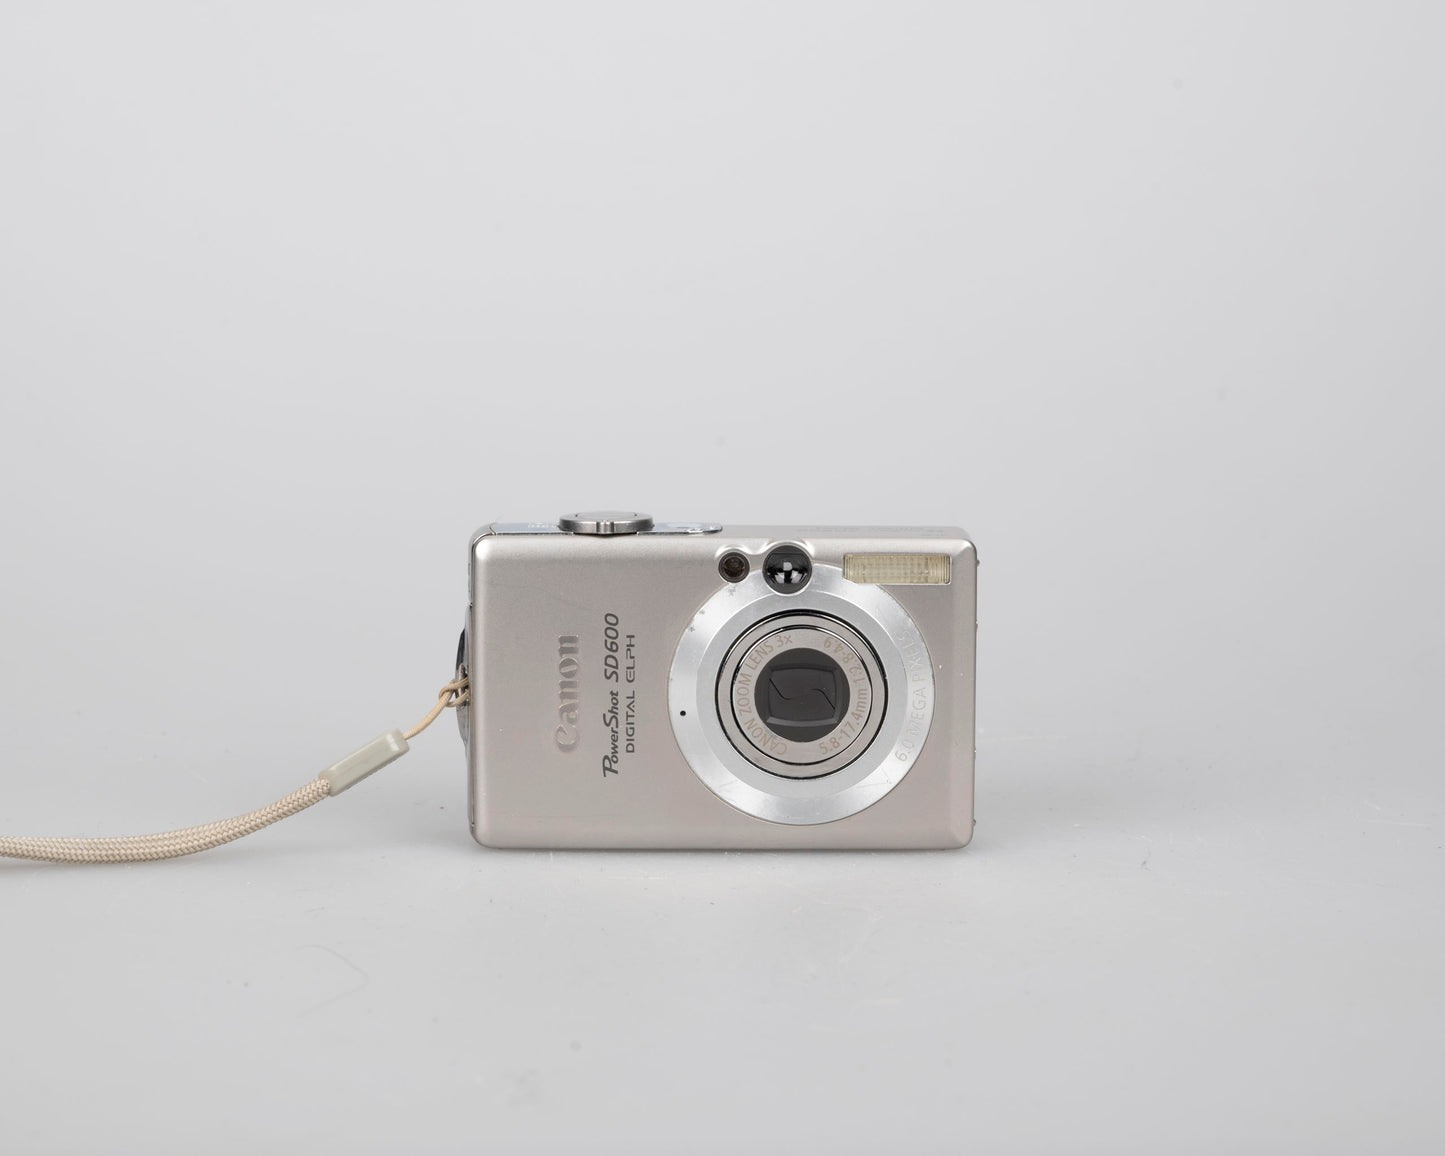 Appareil photo numérique Canon Powershot SD600 Digital Elph 6MP CCD avec carte SD 2 Go + batterie + chargeur